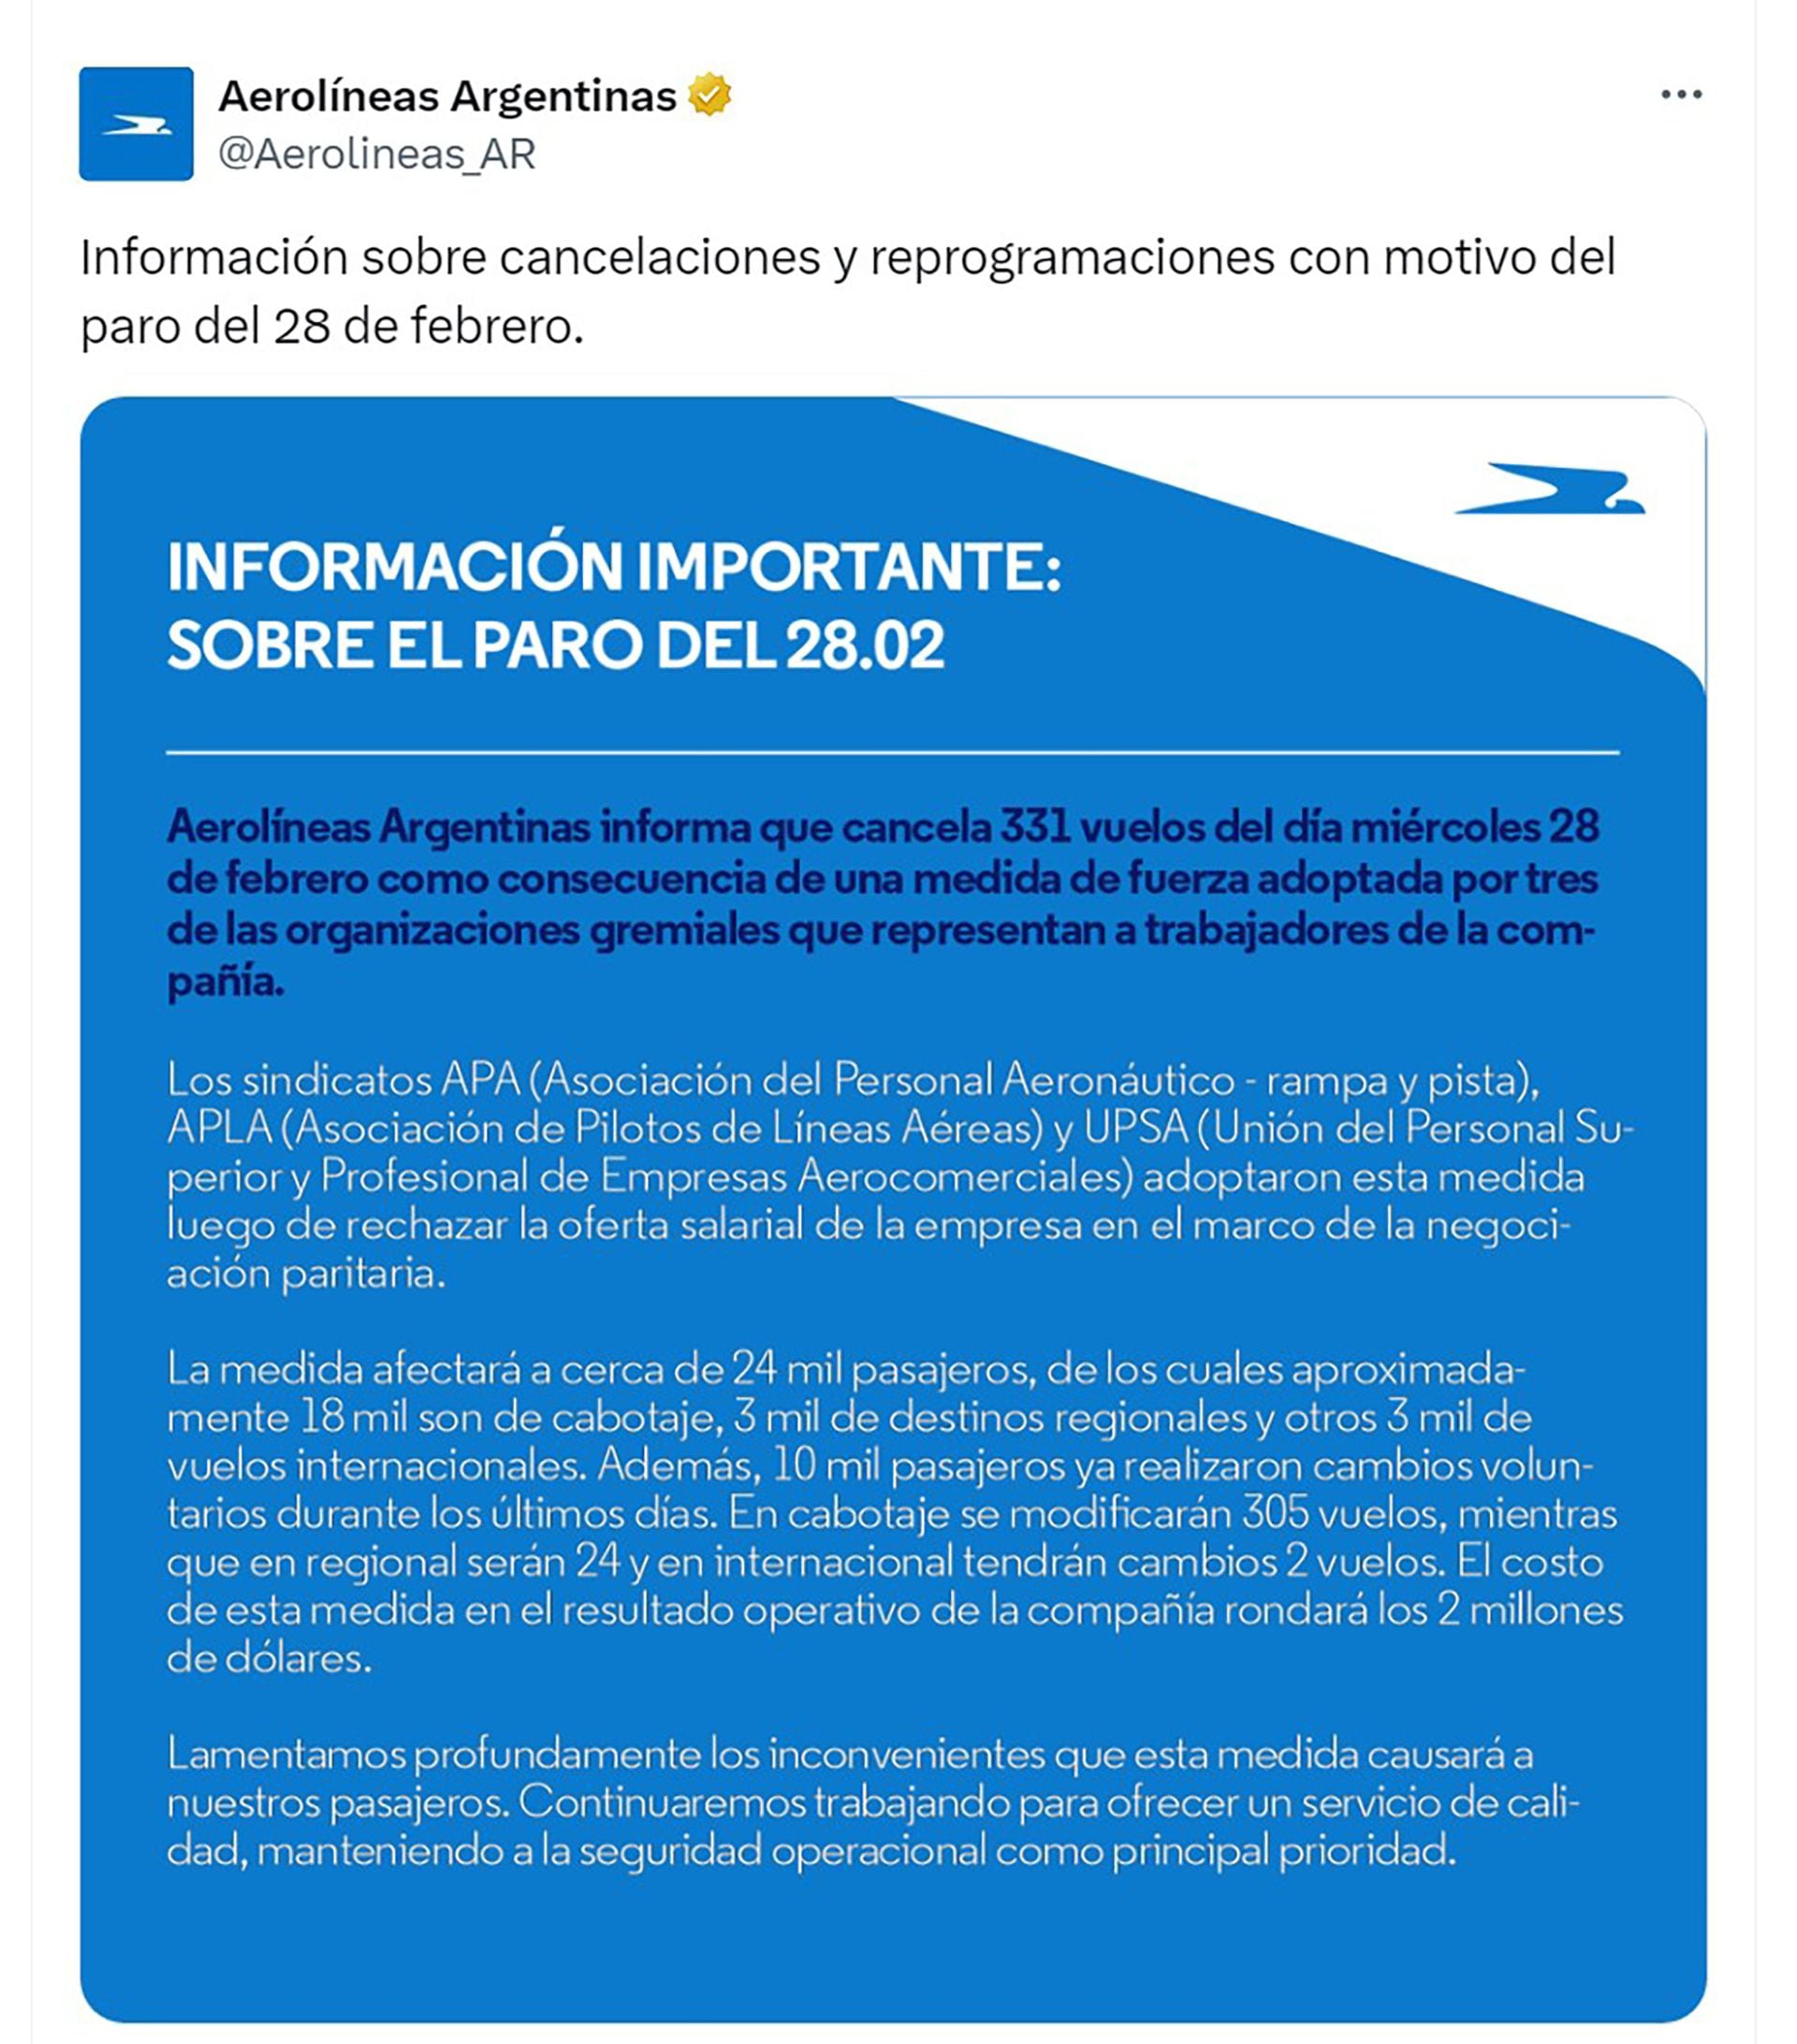 Aerolíneas Argentinas emitió un comunicado en sus redes sociales tras el paro